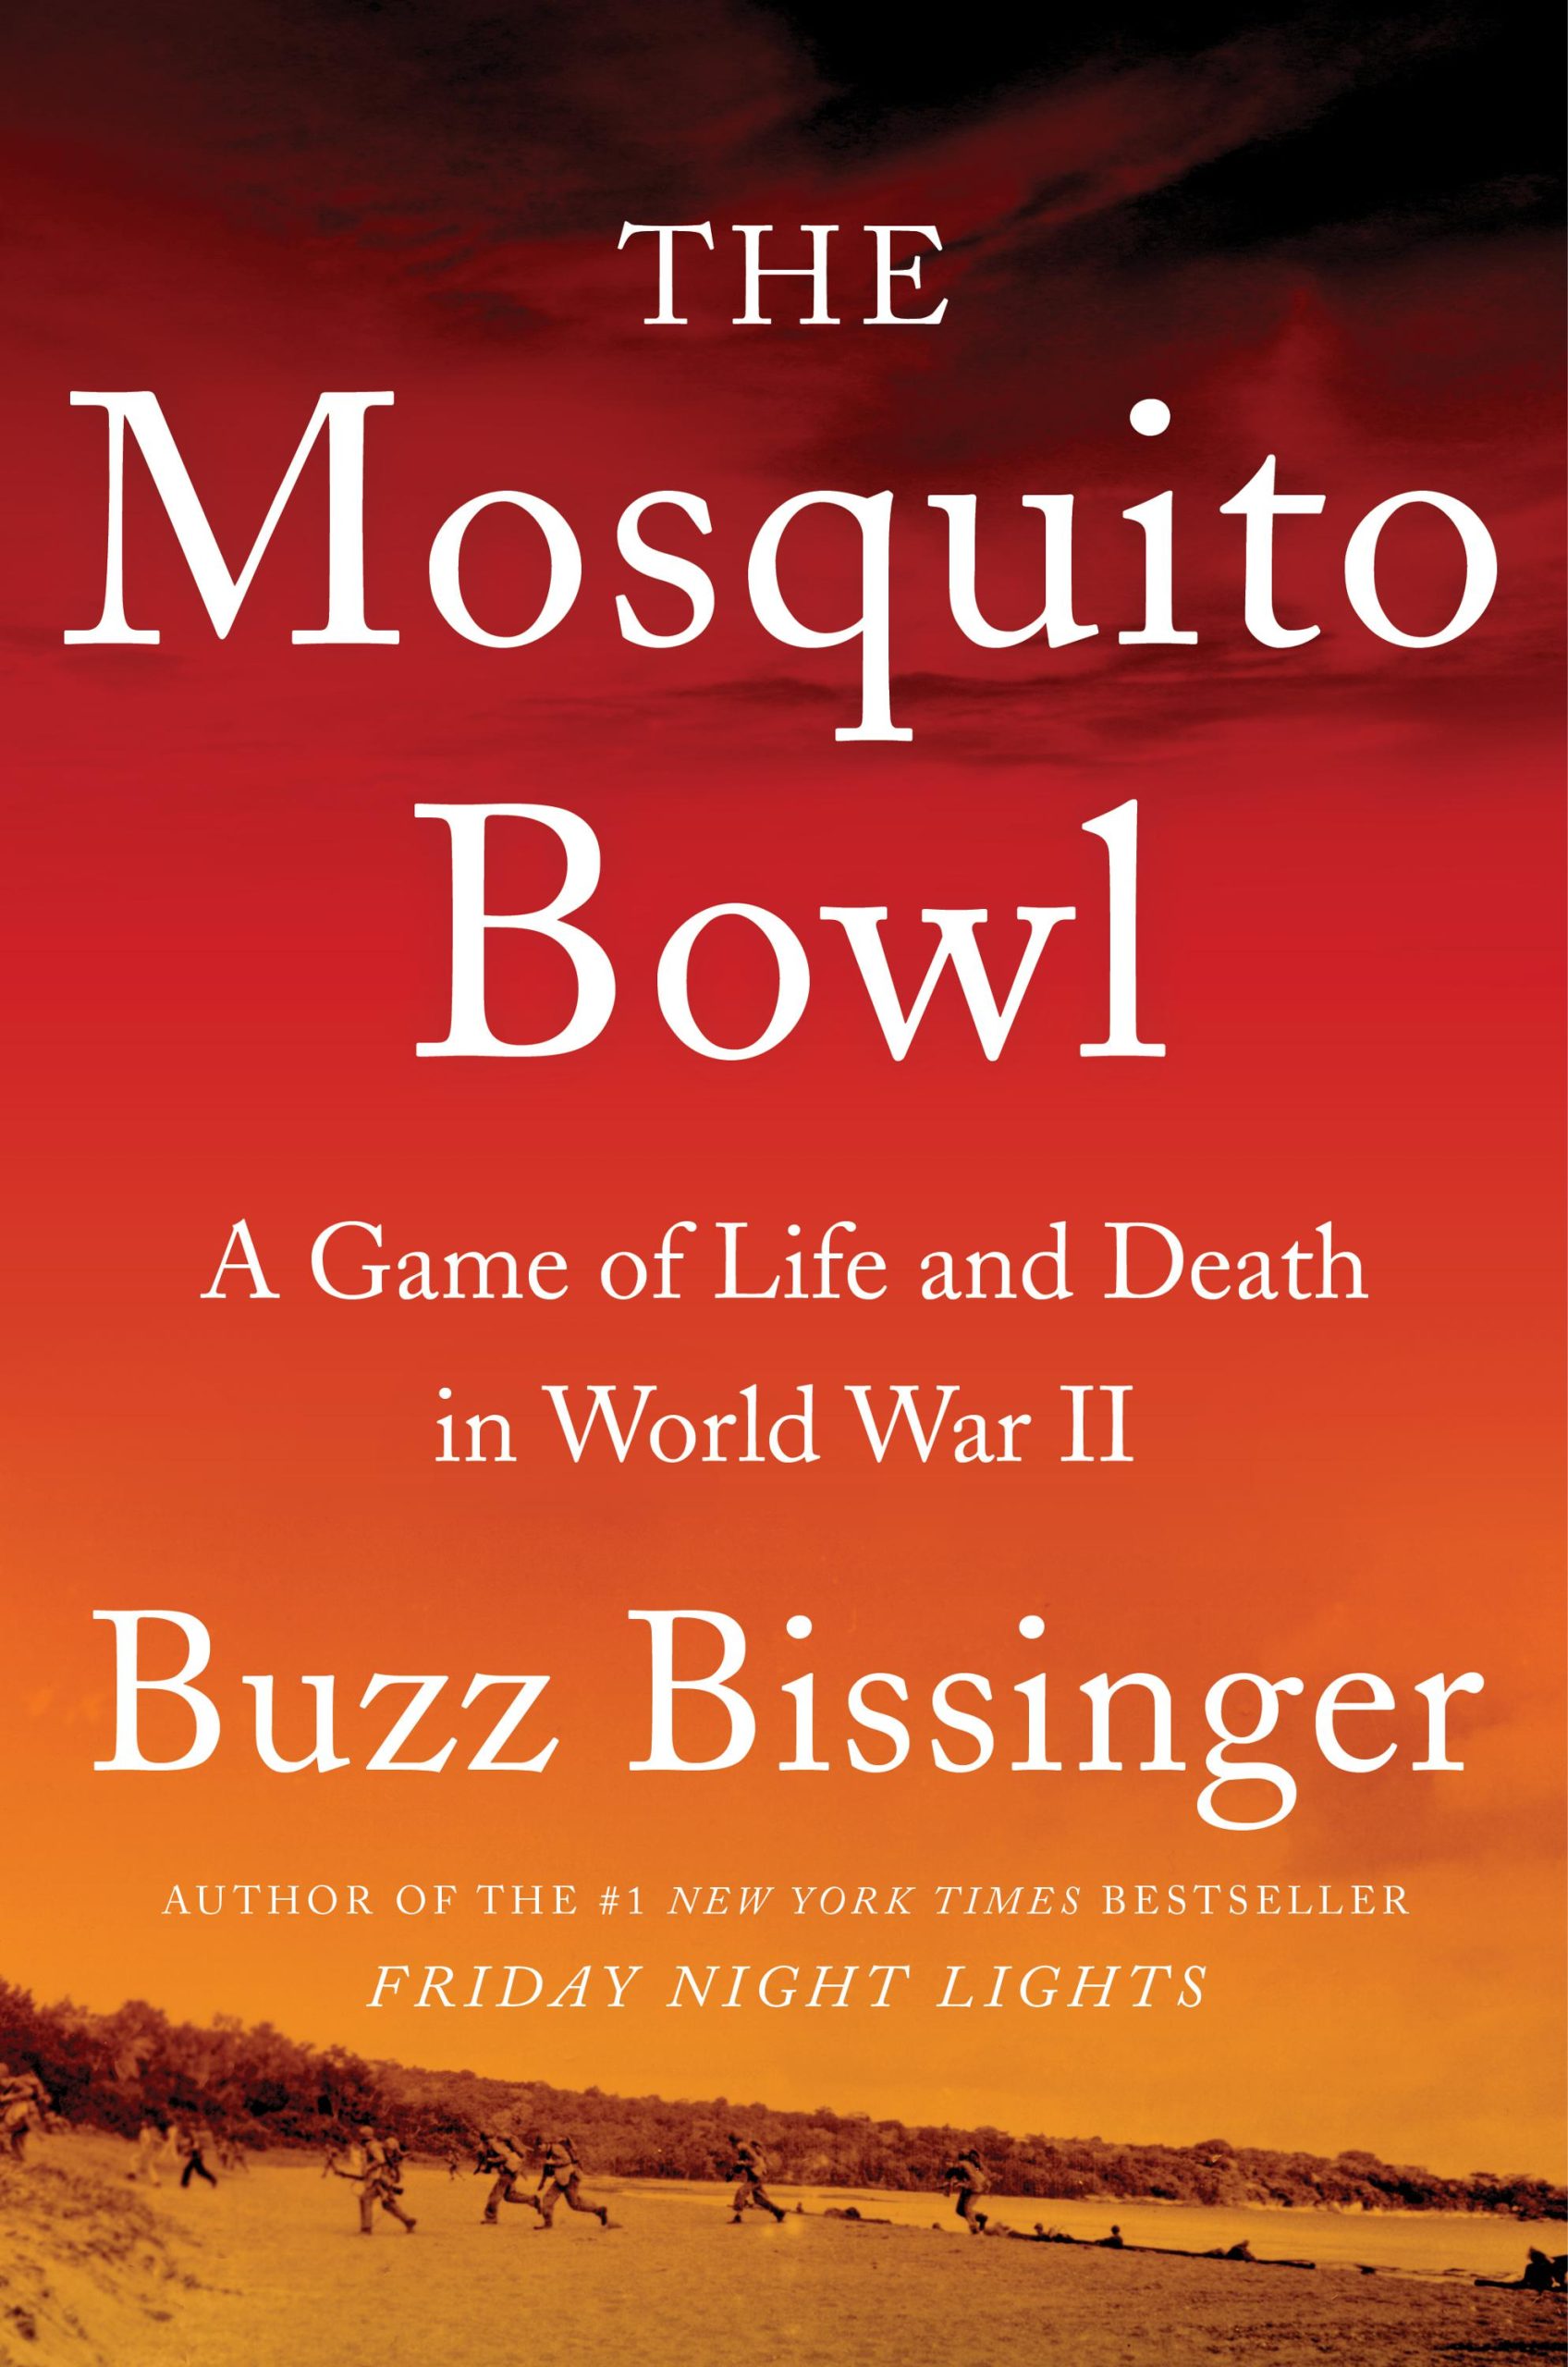 Reseña: Una historia de guerra, ‘Mosquito Bowl’ define el valor, el deber